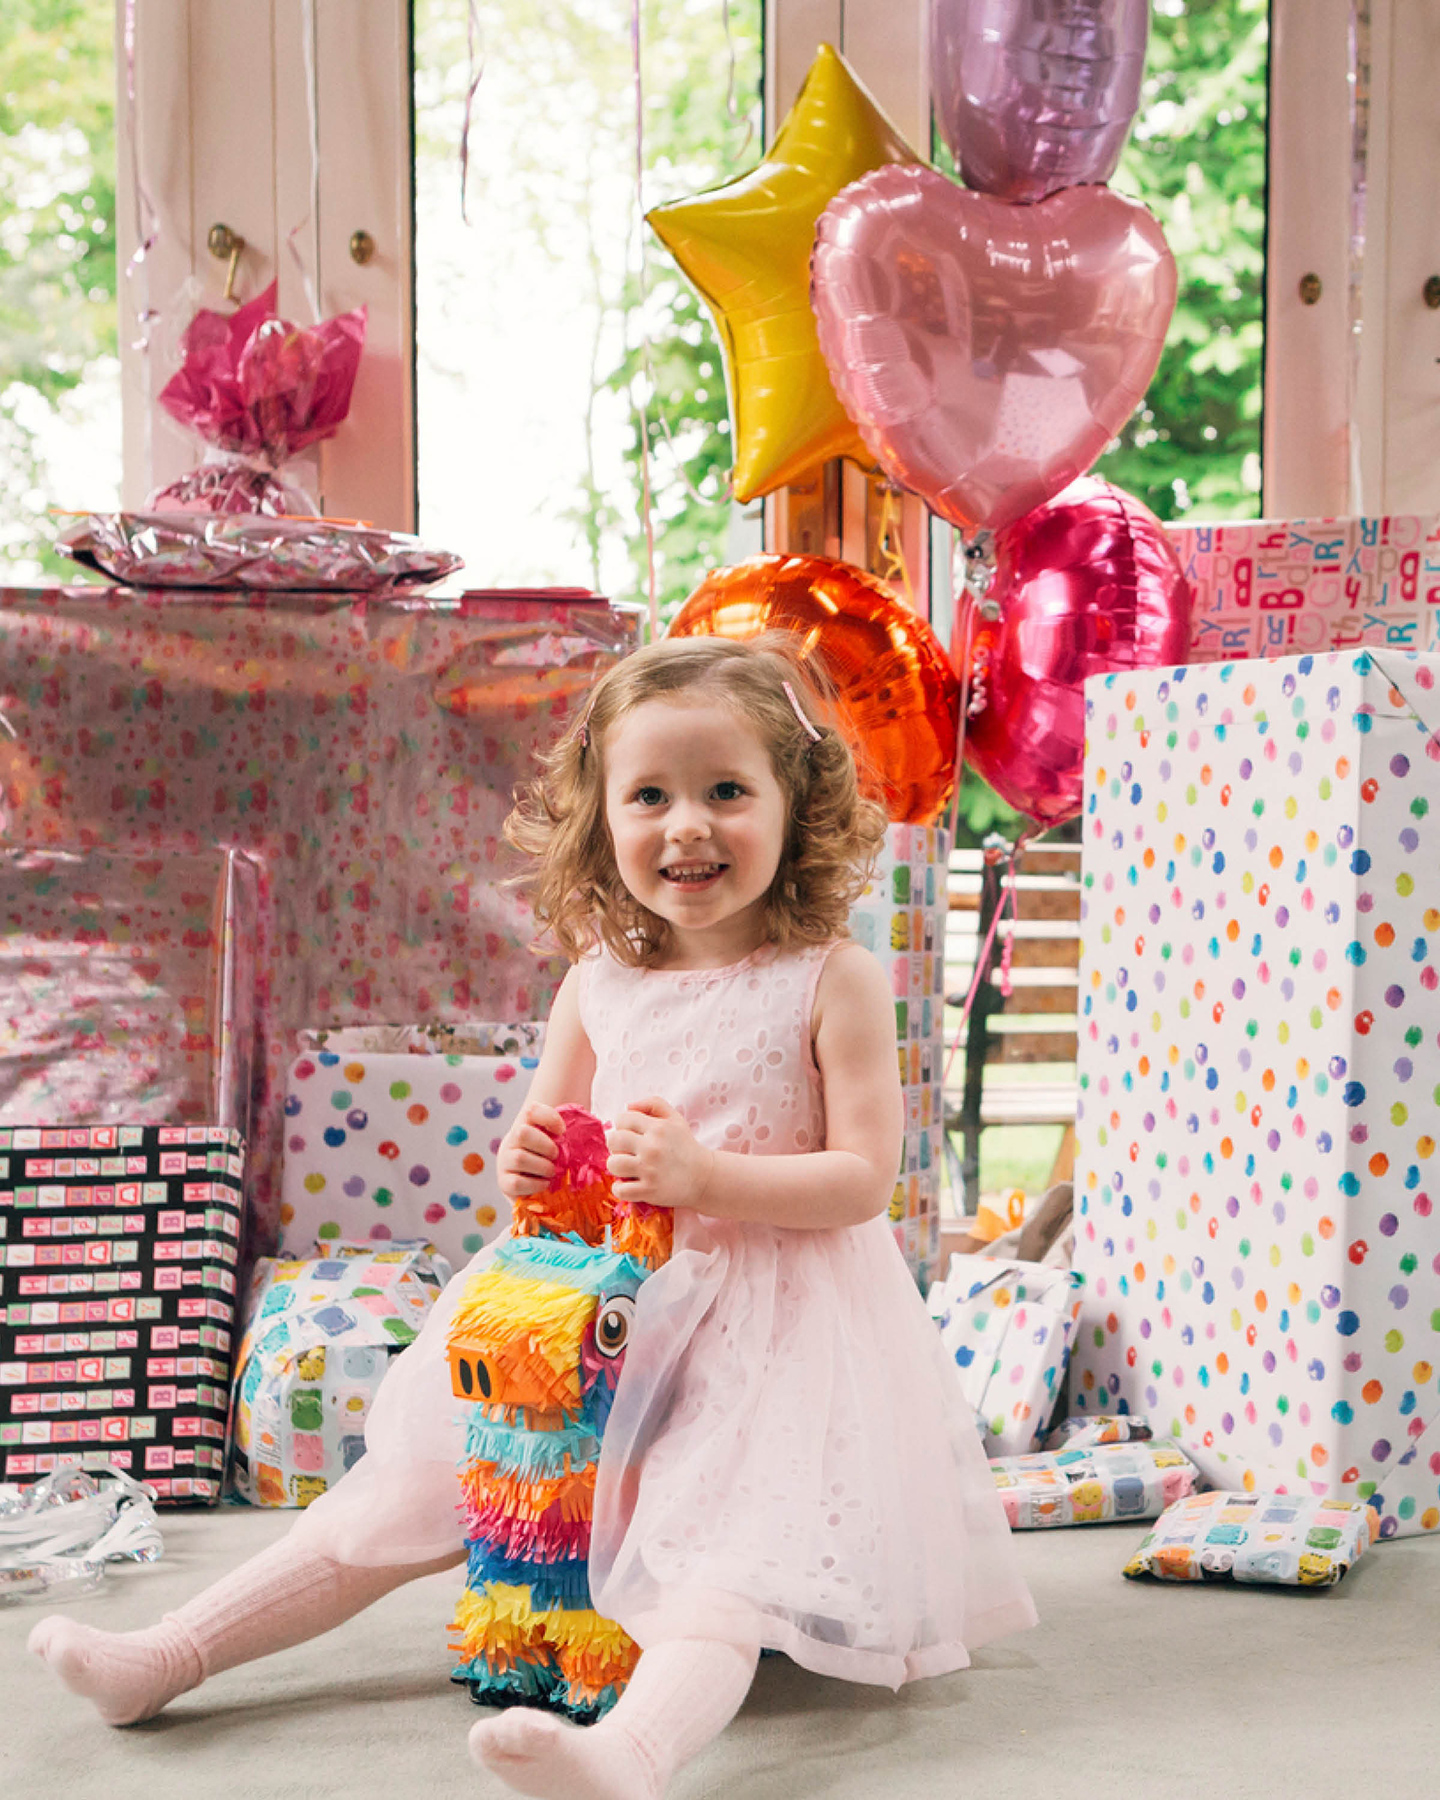 Mädchen in rosafarbenem Kleid sitzt vor einem großen Berg an Geburtstagsgeschenken. Helium gefüllte Luftballons in Herz- und Sternform zieren die Geschenke.